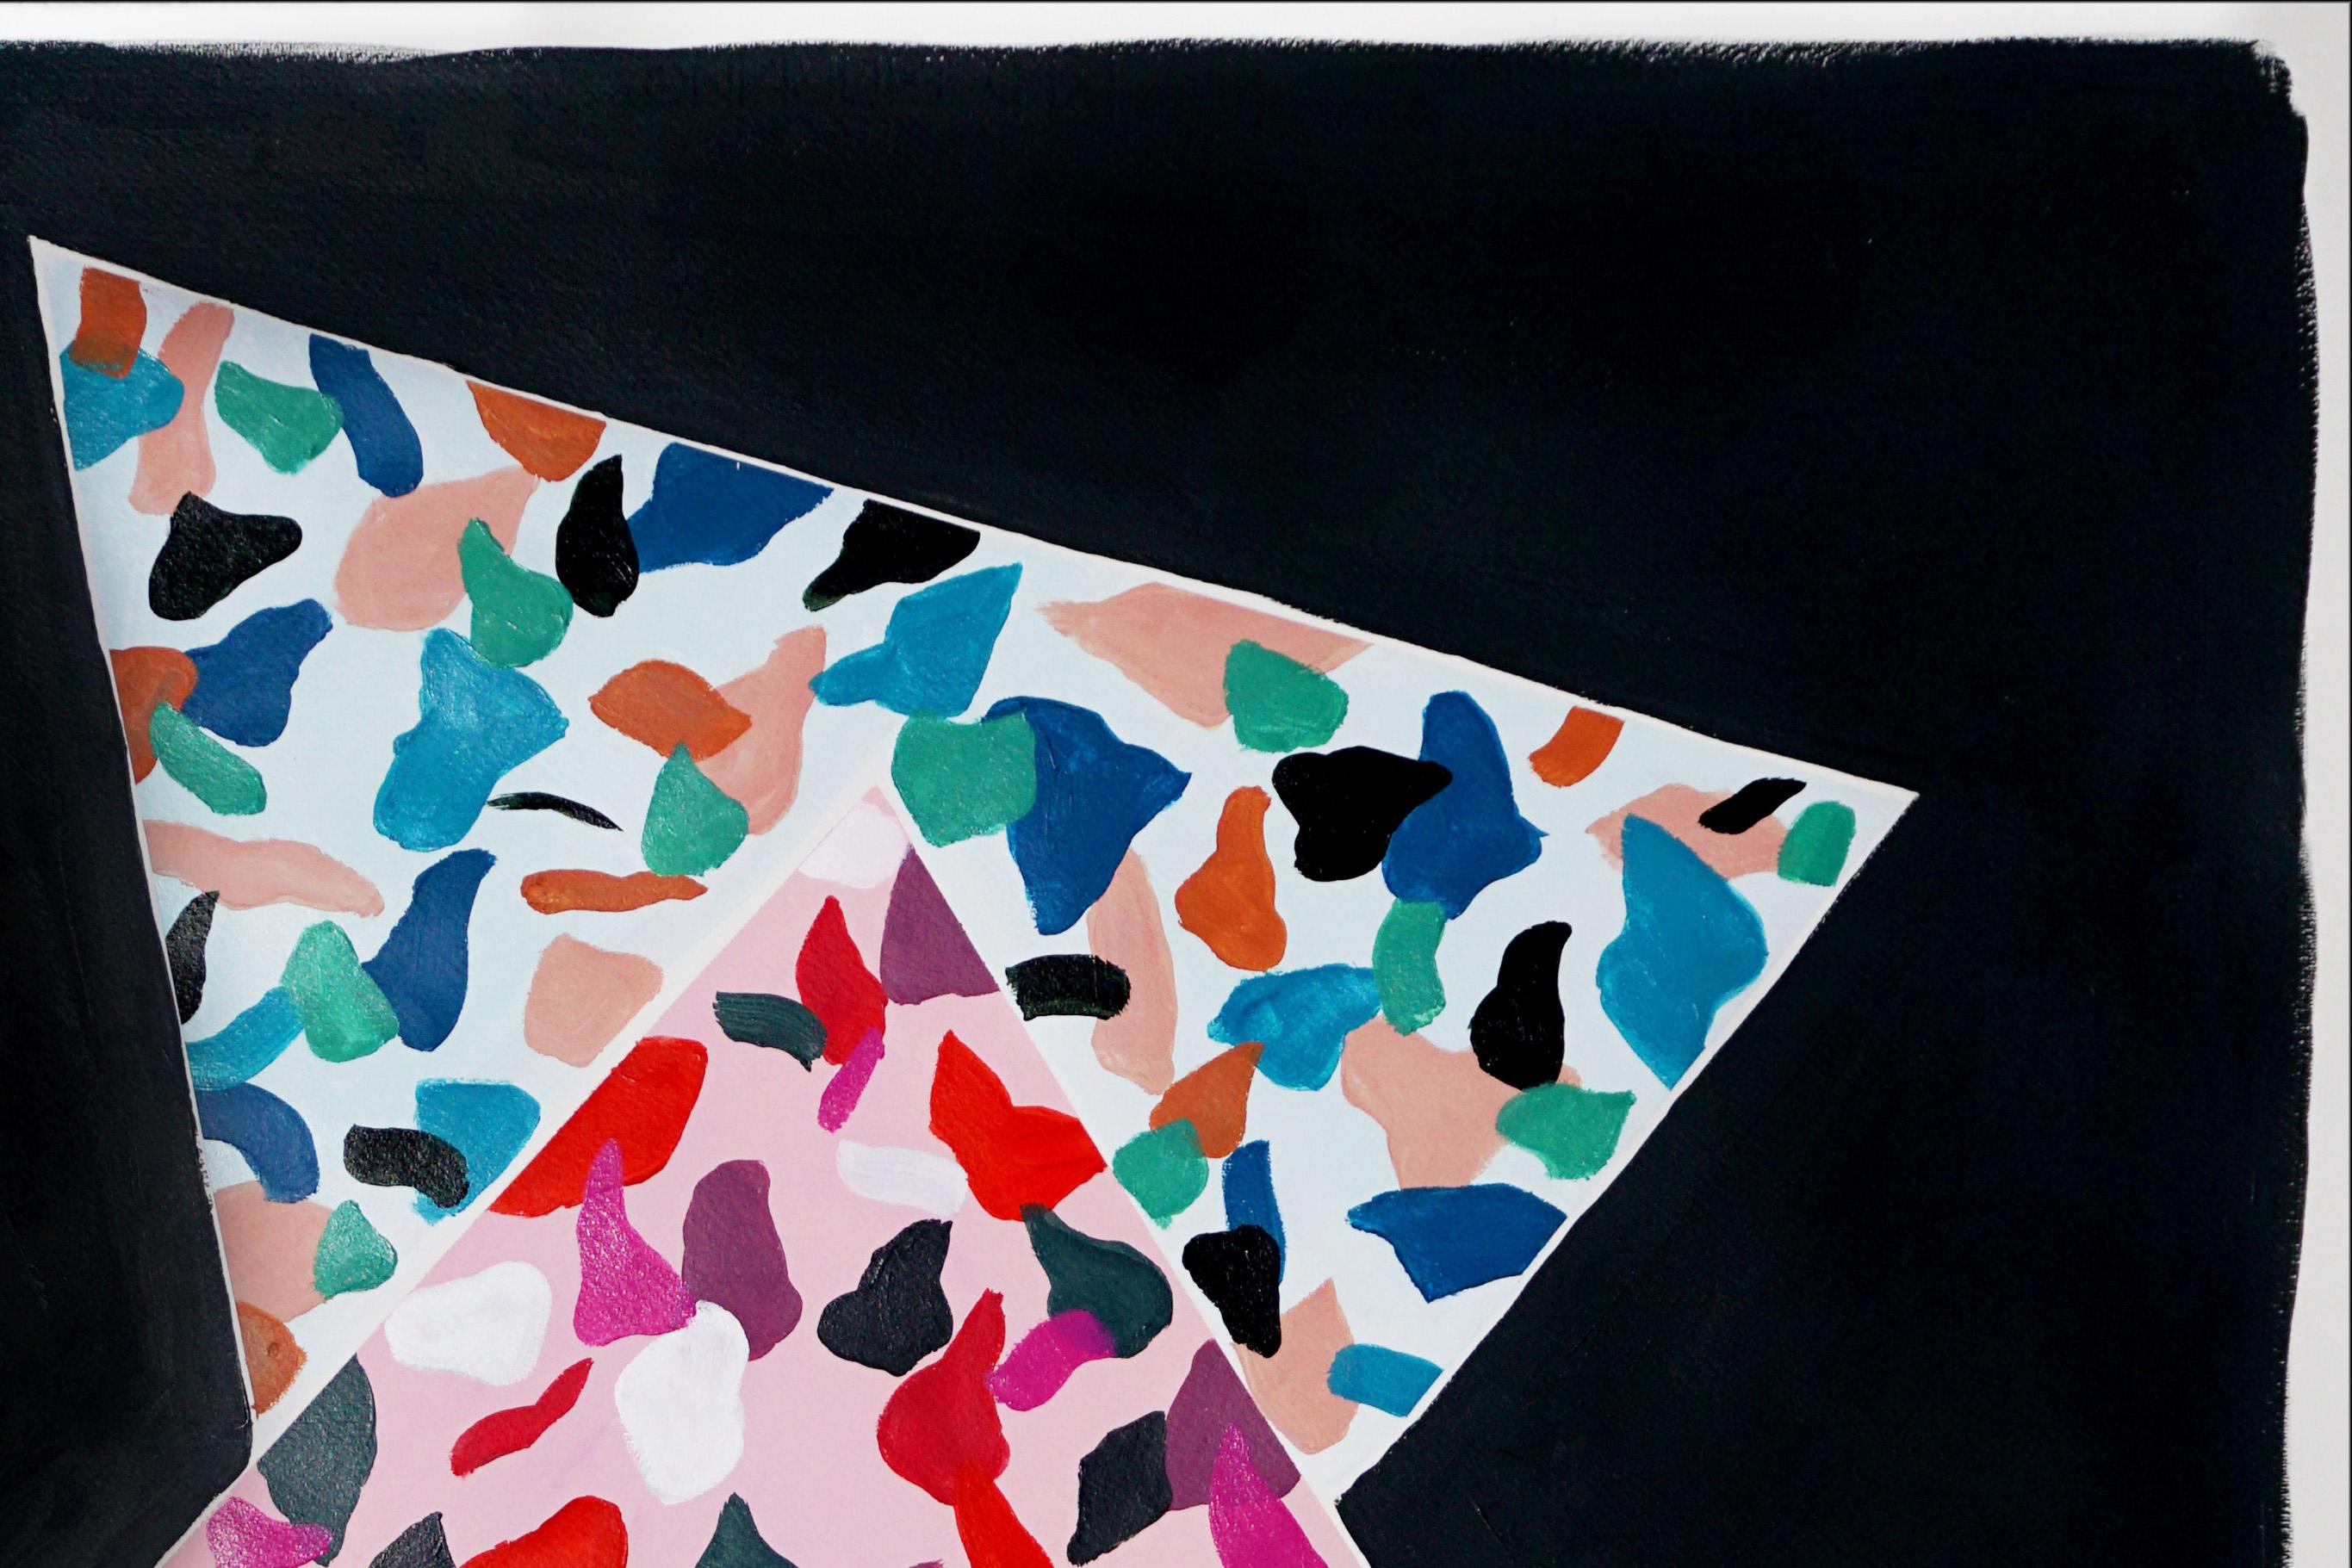 Überlappung von Tarnmustern, Dreiecke auf schwarzem Hintergrund, rosa Terrazzofliesenmuster  (Schwarz), Abstract Painting, von Natalia Roman